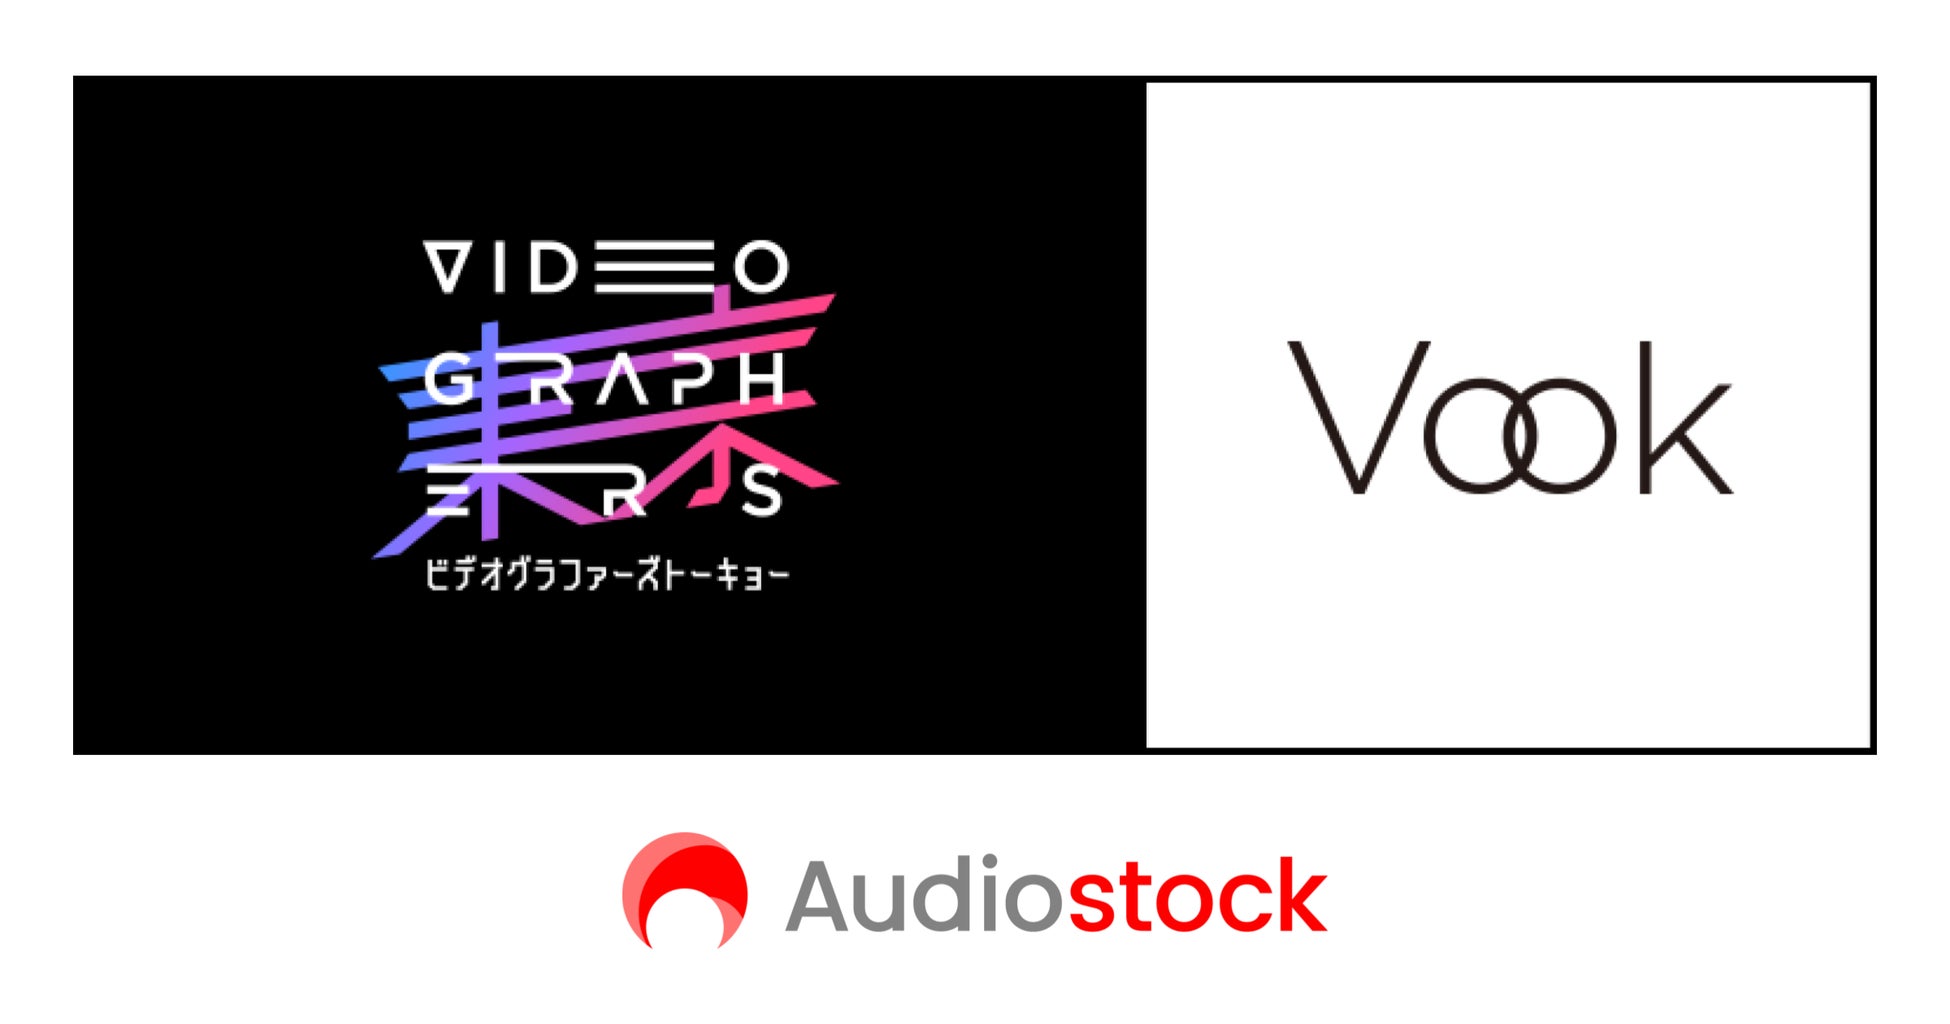 ストックミュージックサービス「Audiostock」日本最大級の映像クリエイターカンファレンス「VIDEOGRAPHERS TOKYO 2022」に出展